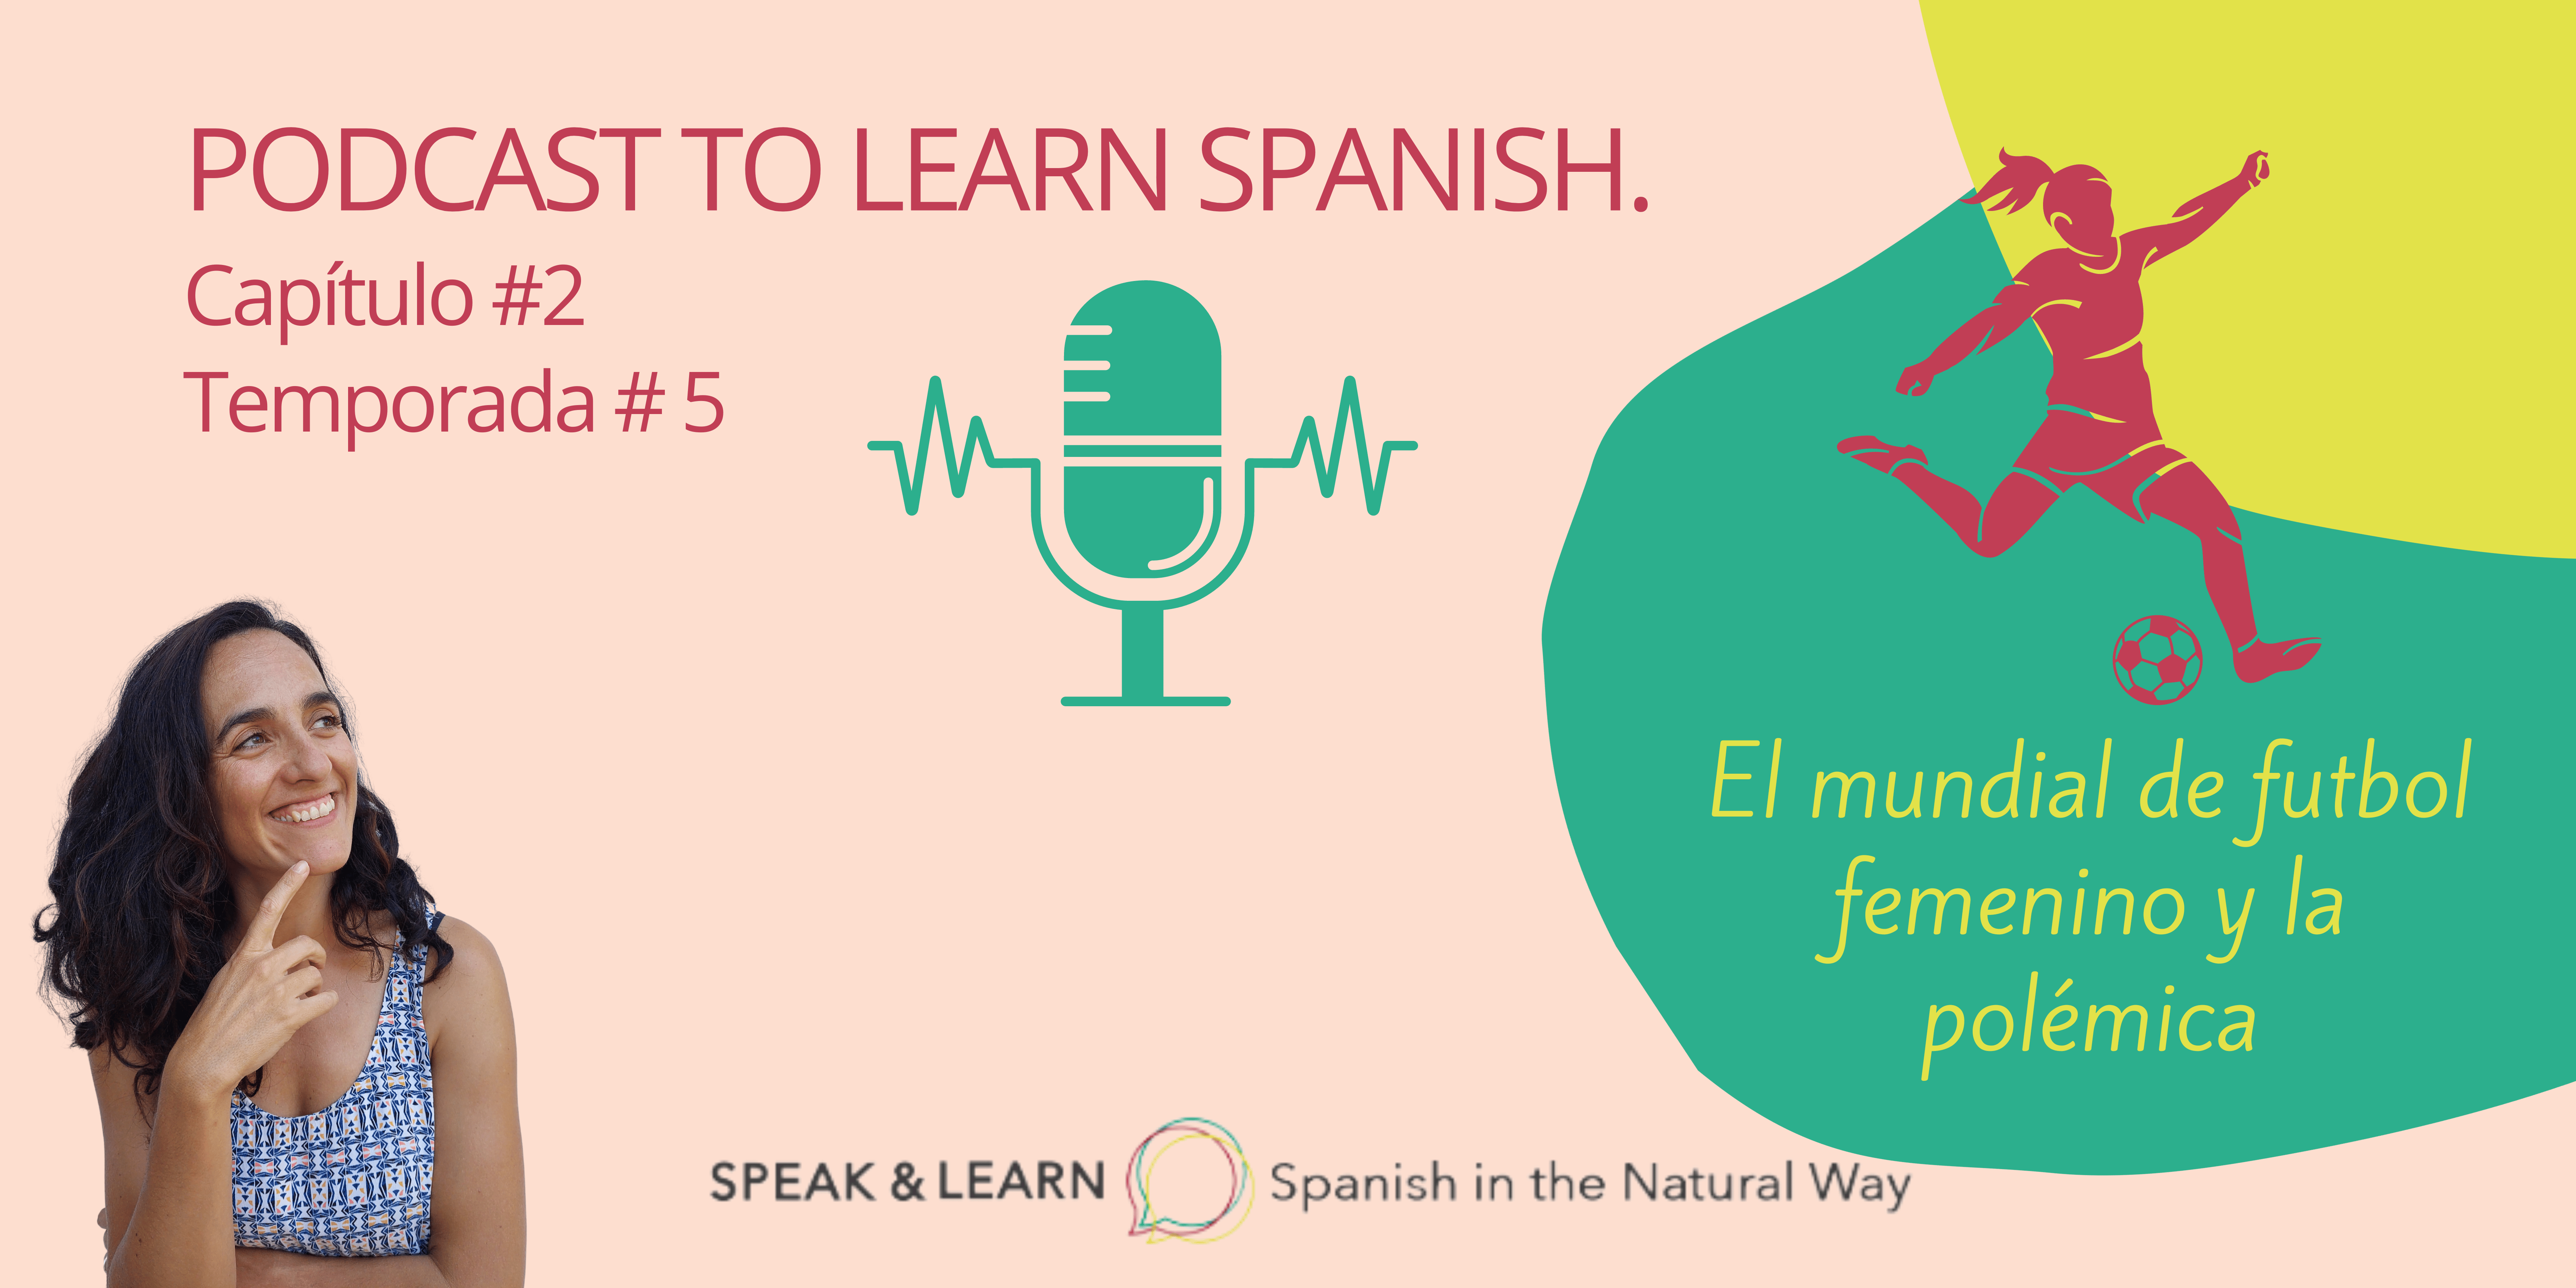 Portada nuevo episodio para aprender español del Podcast de Speak & Learn. Hoy hablamos del mundial de fútbol femenino